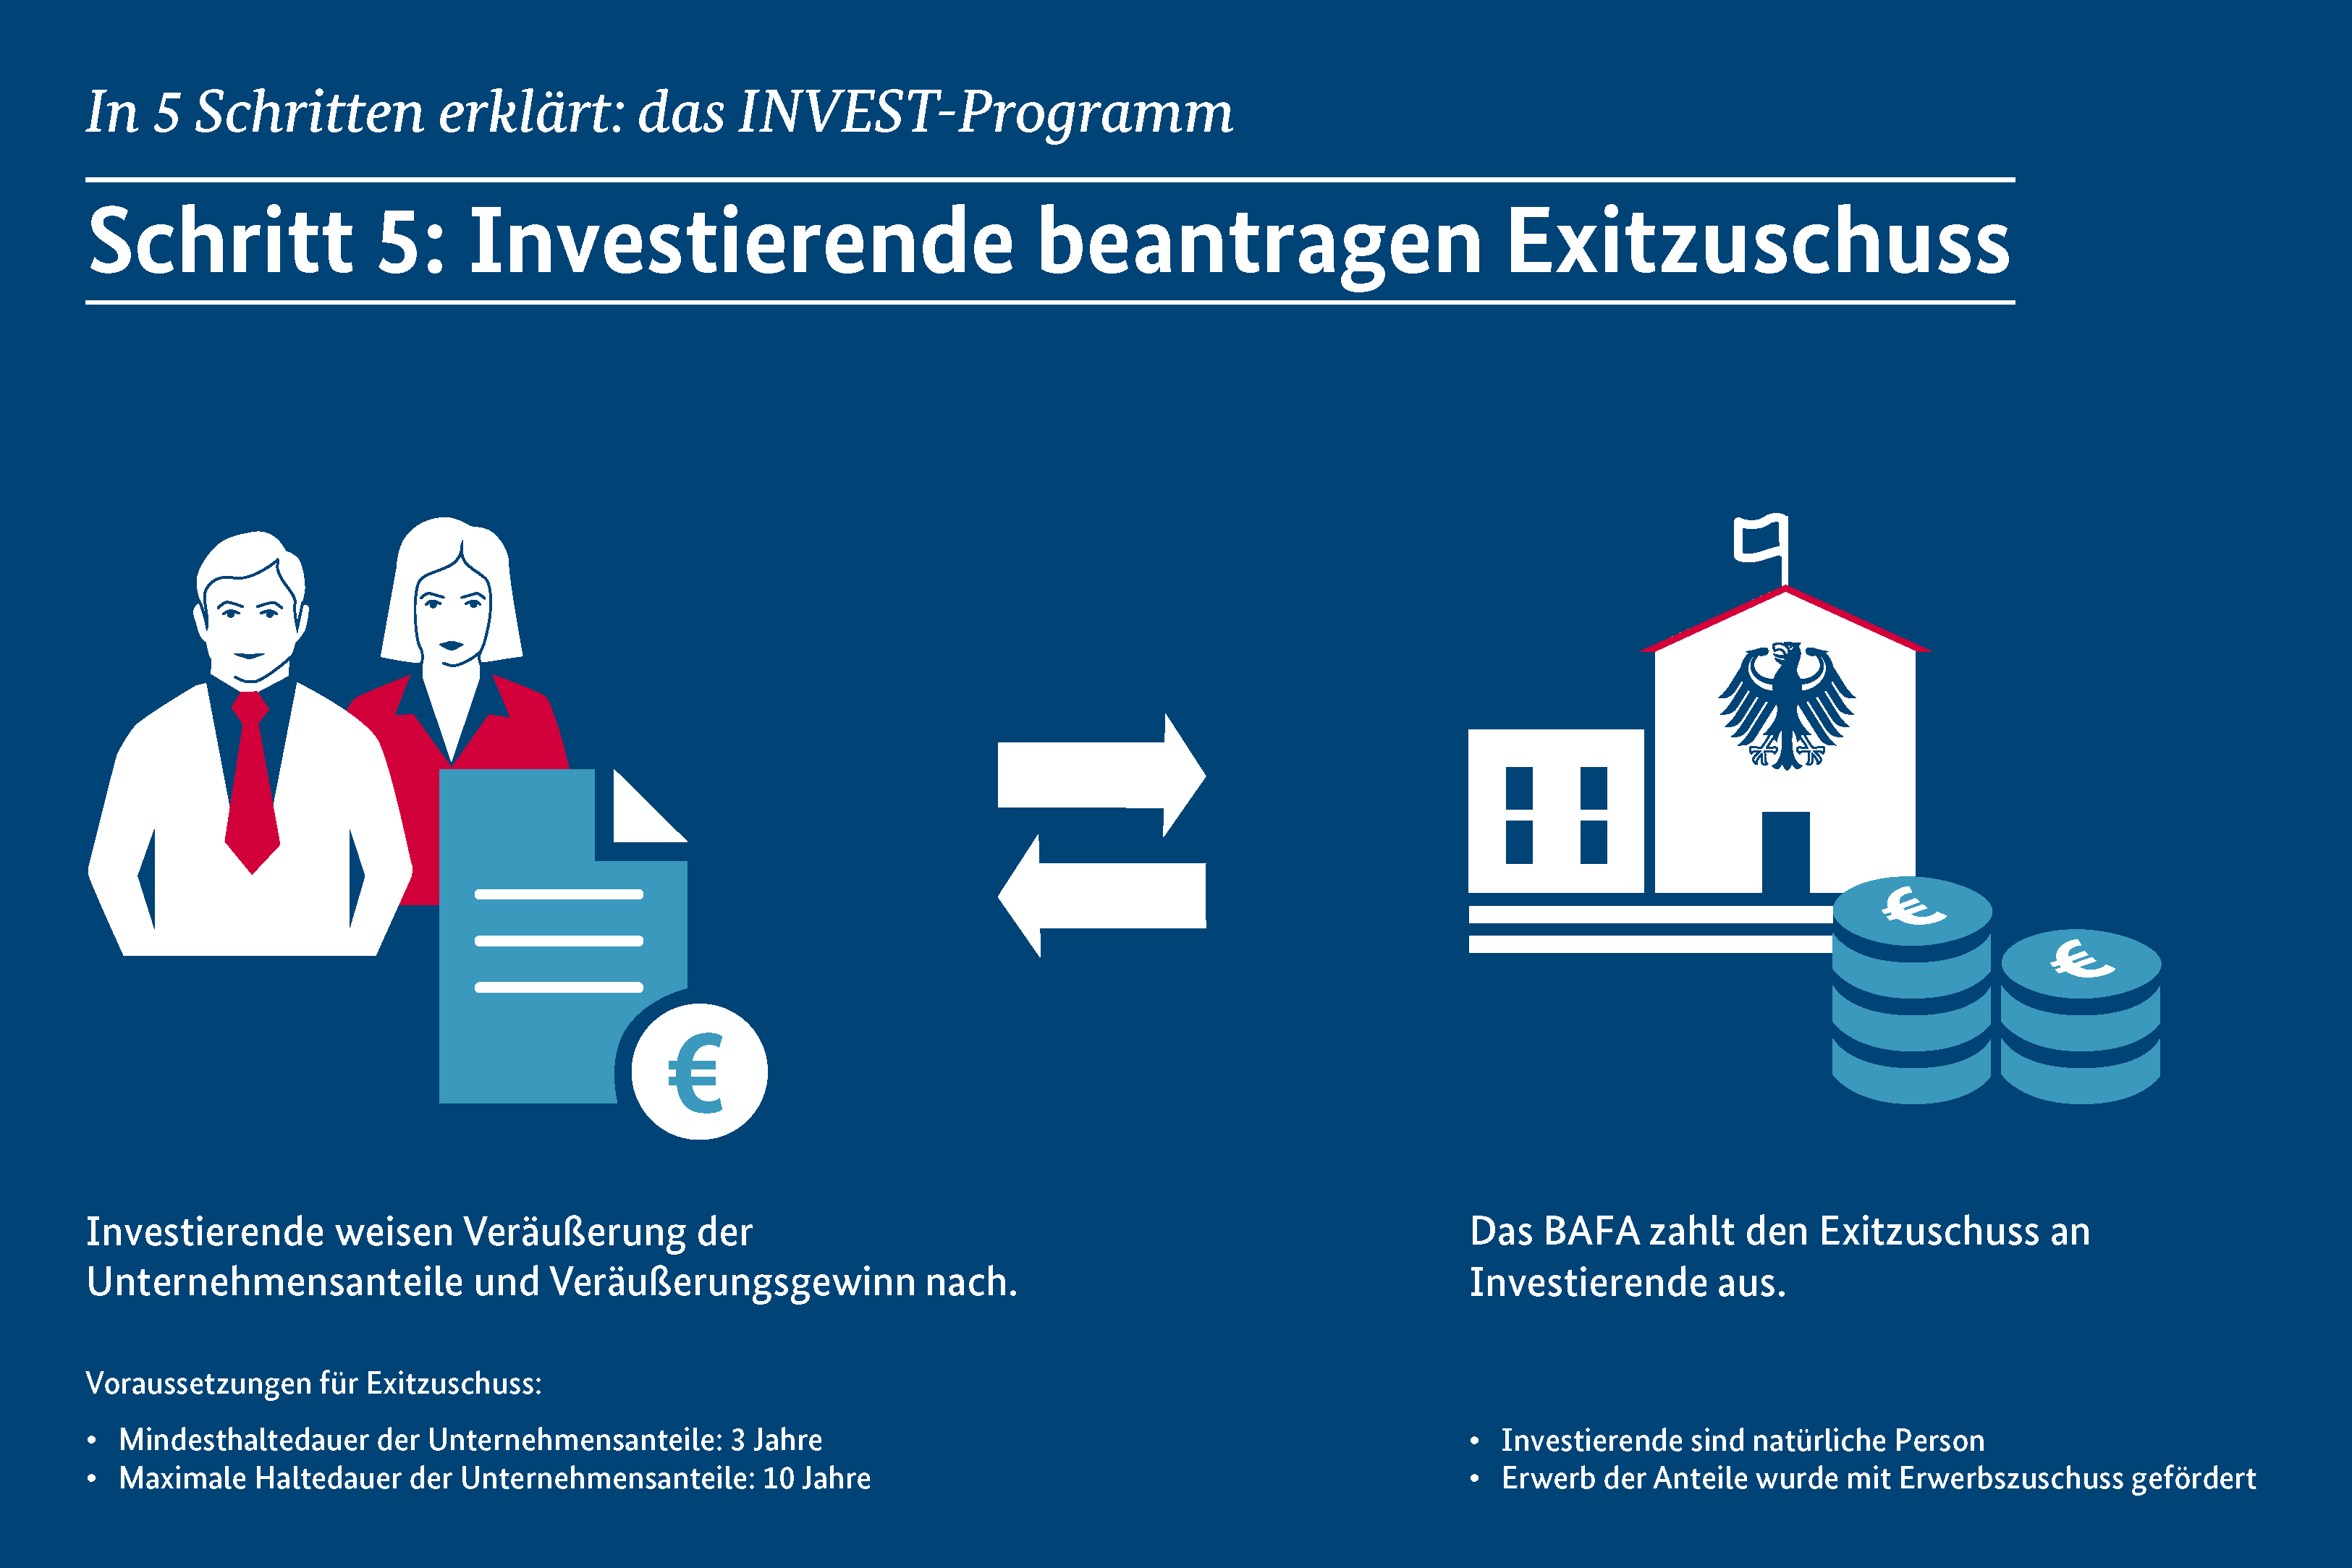 Schritt 5: Investor beantragt Exitzuschuss; Quelle: BMWi